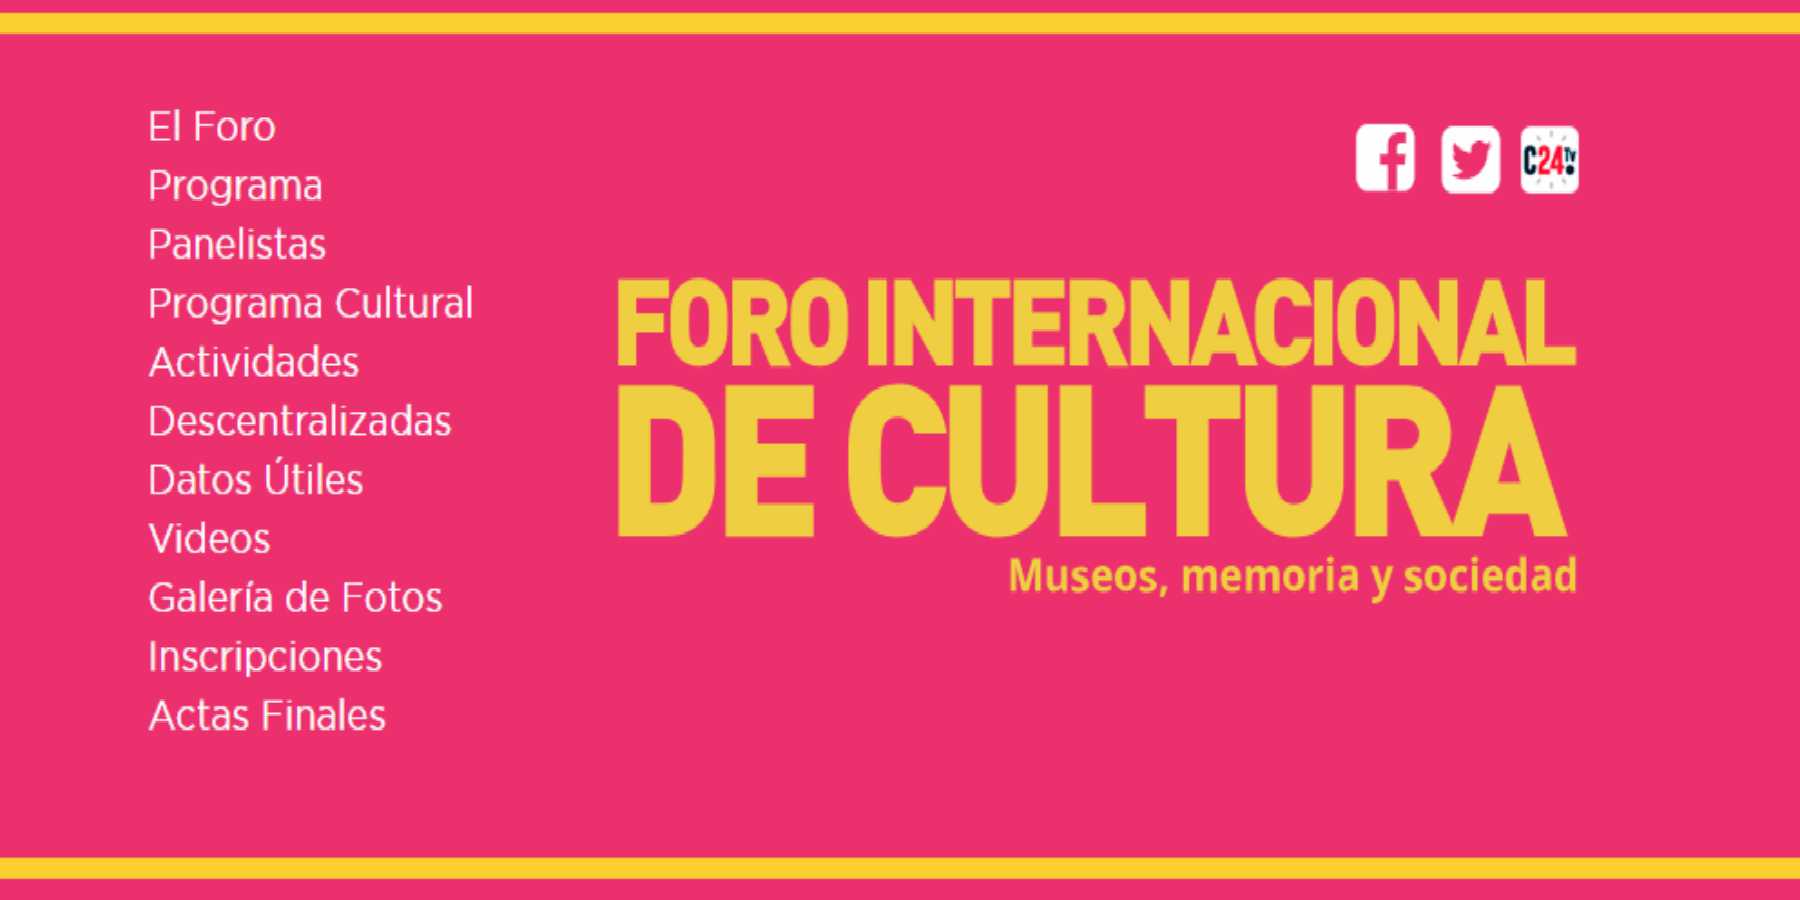 Foro Internacional de Cultura: Museos, Memoria y Sociedad